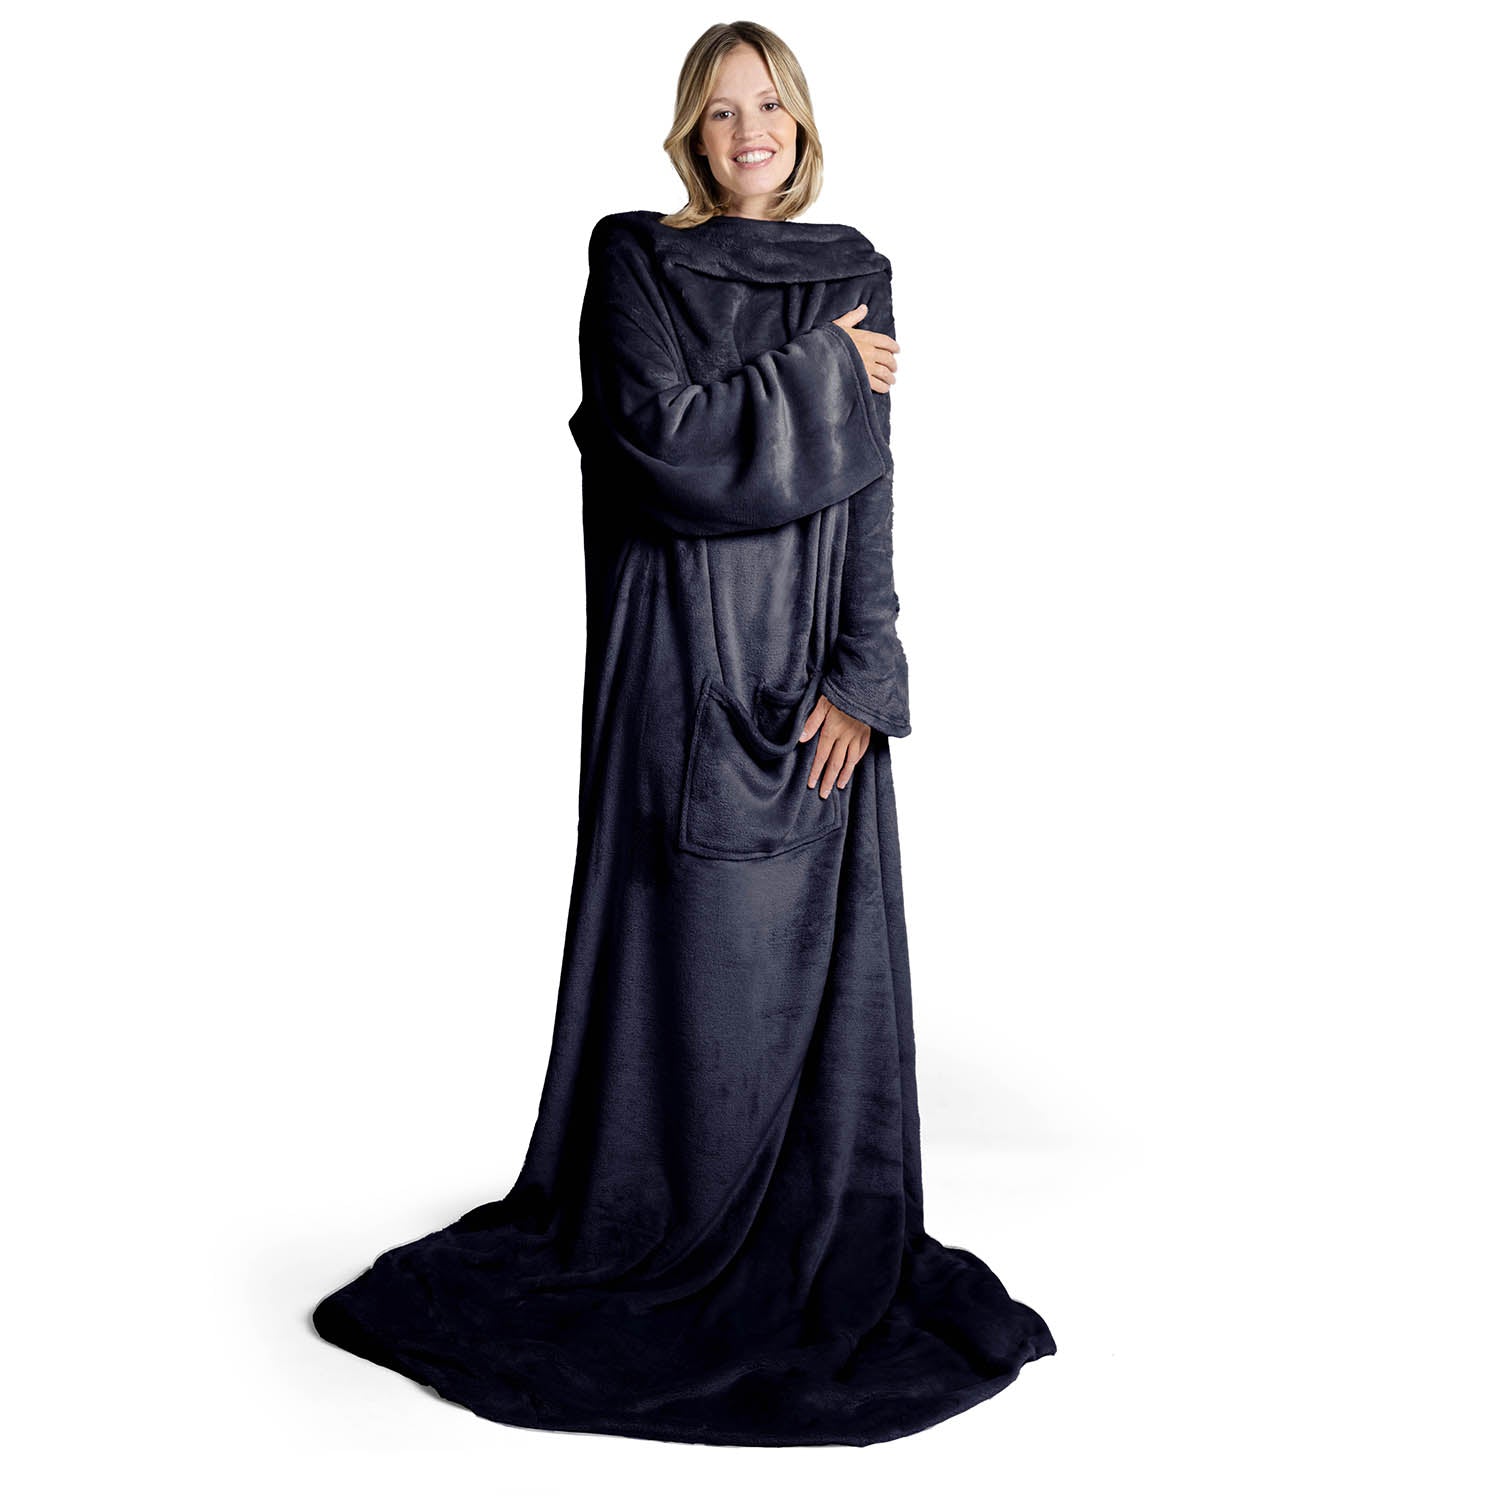 Lächelnde Frau in einem übergroßen dunkelblau flauschigen Kleidungsstück das bis zum Boden reicht steht vor weißem Hintergrund.